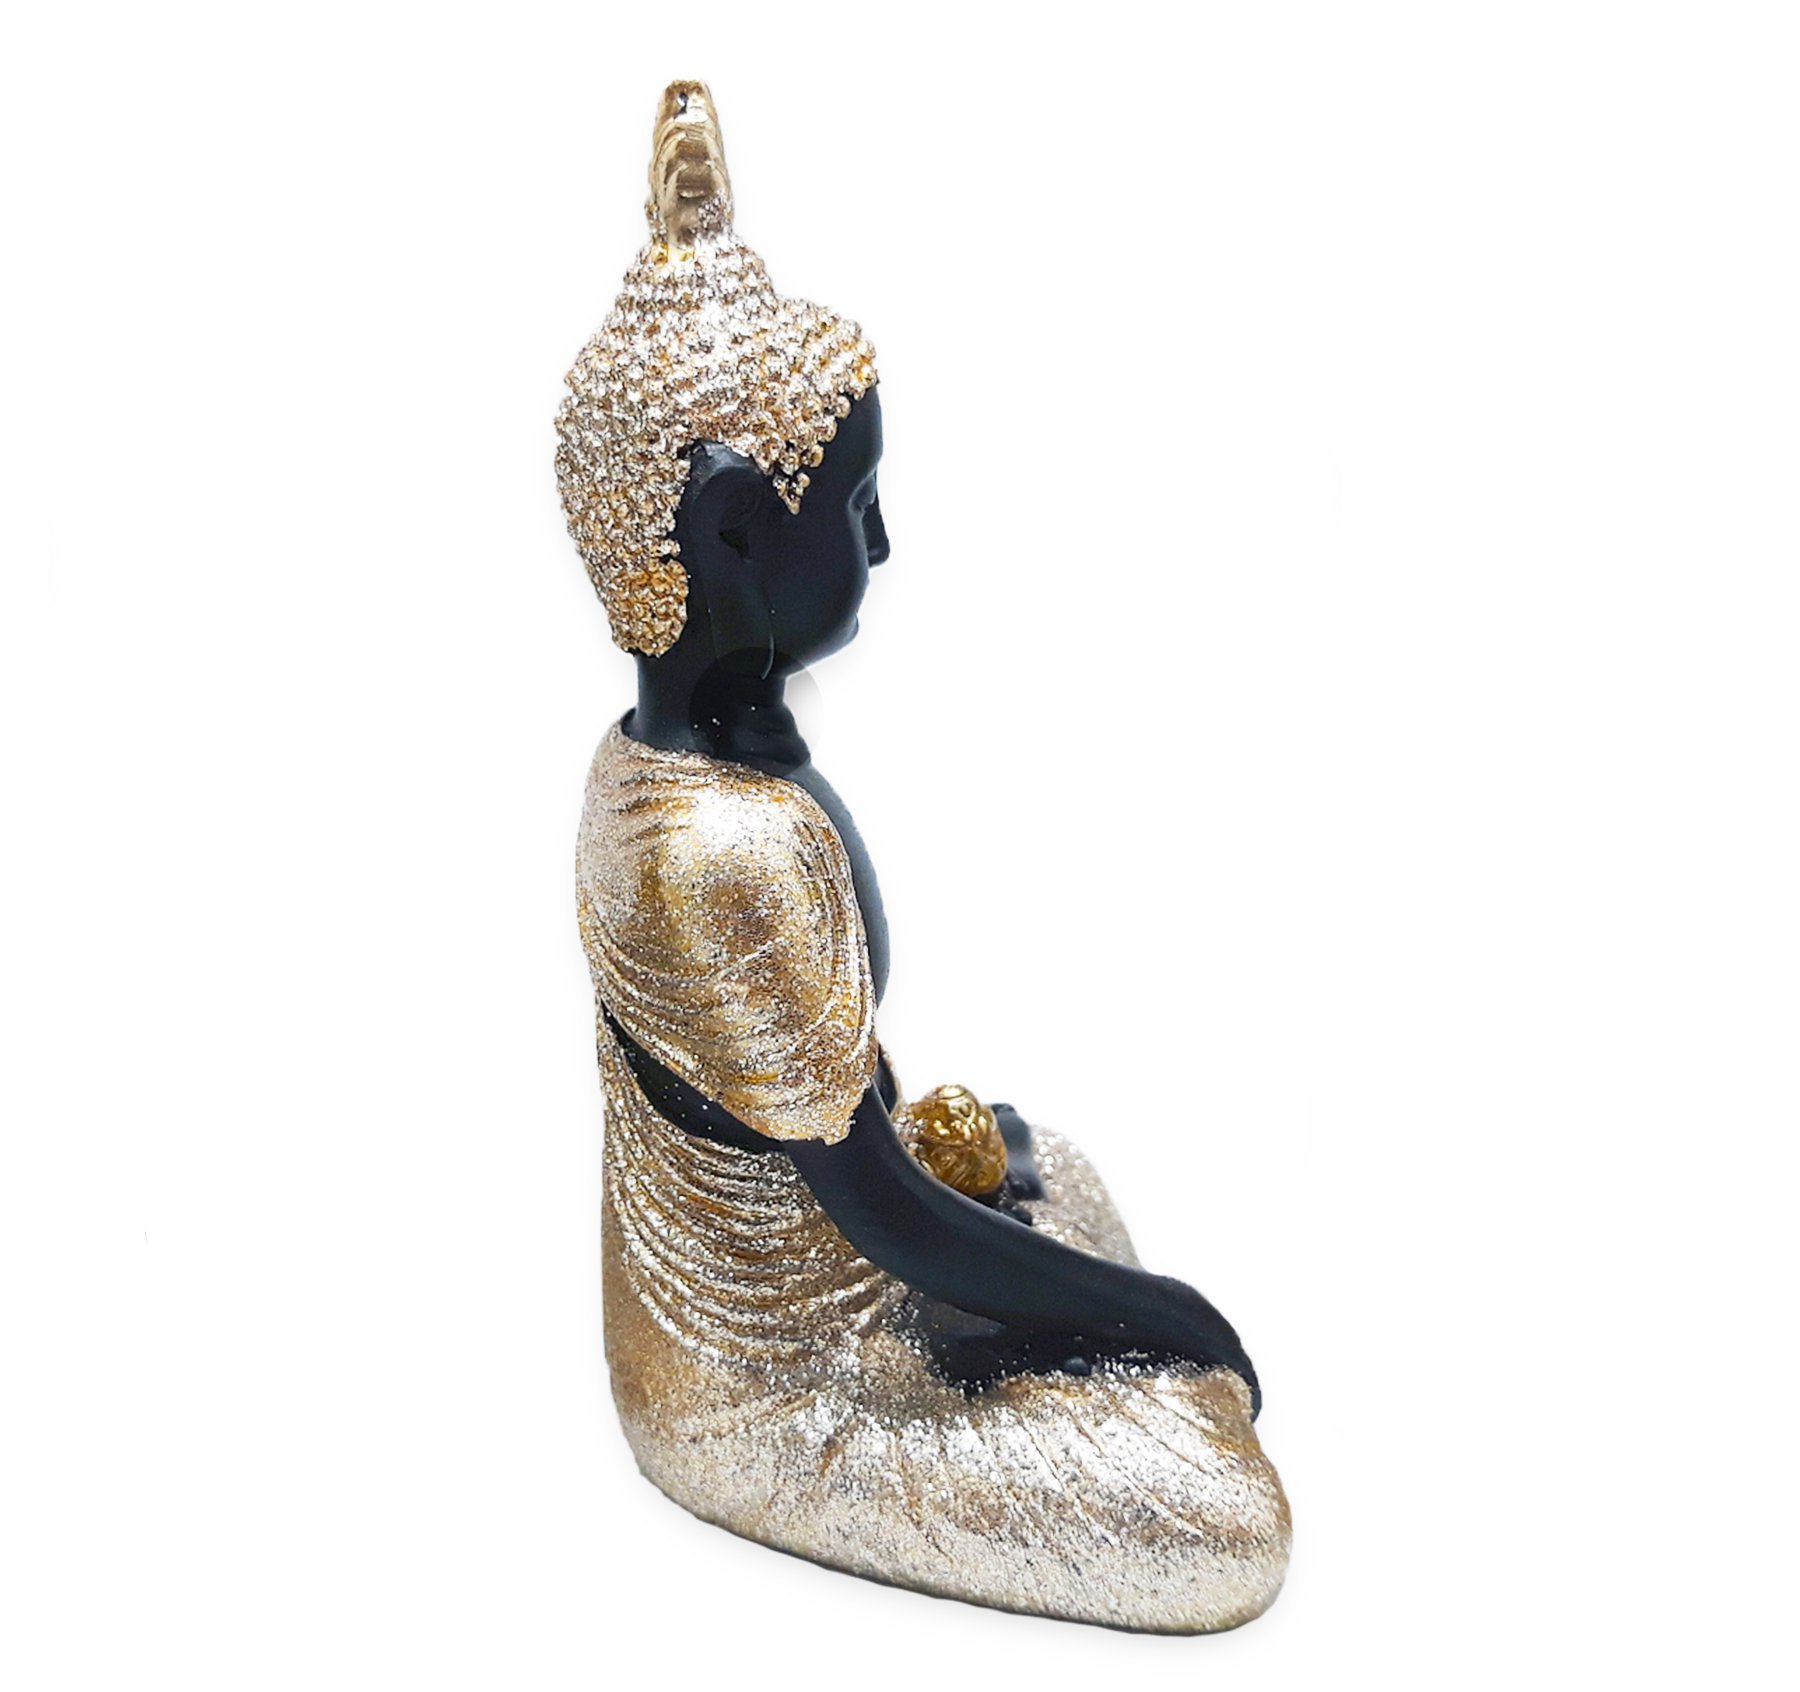 Buda Tailandês da Meditação Yoga Preto Dourado 12 cm - 2